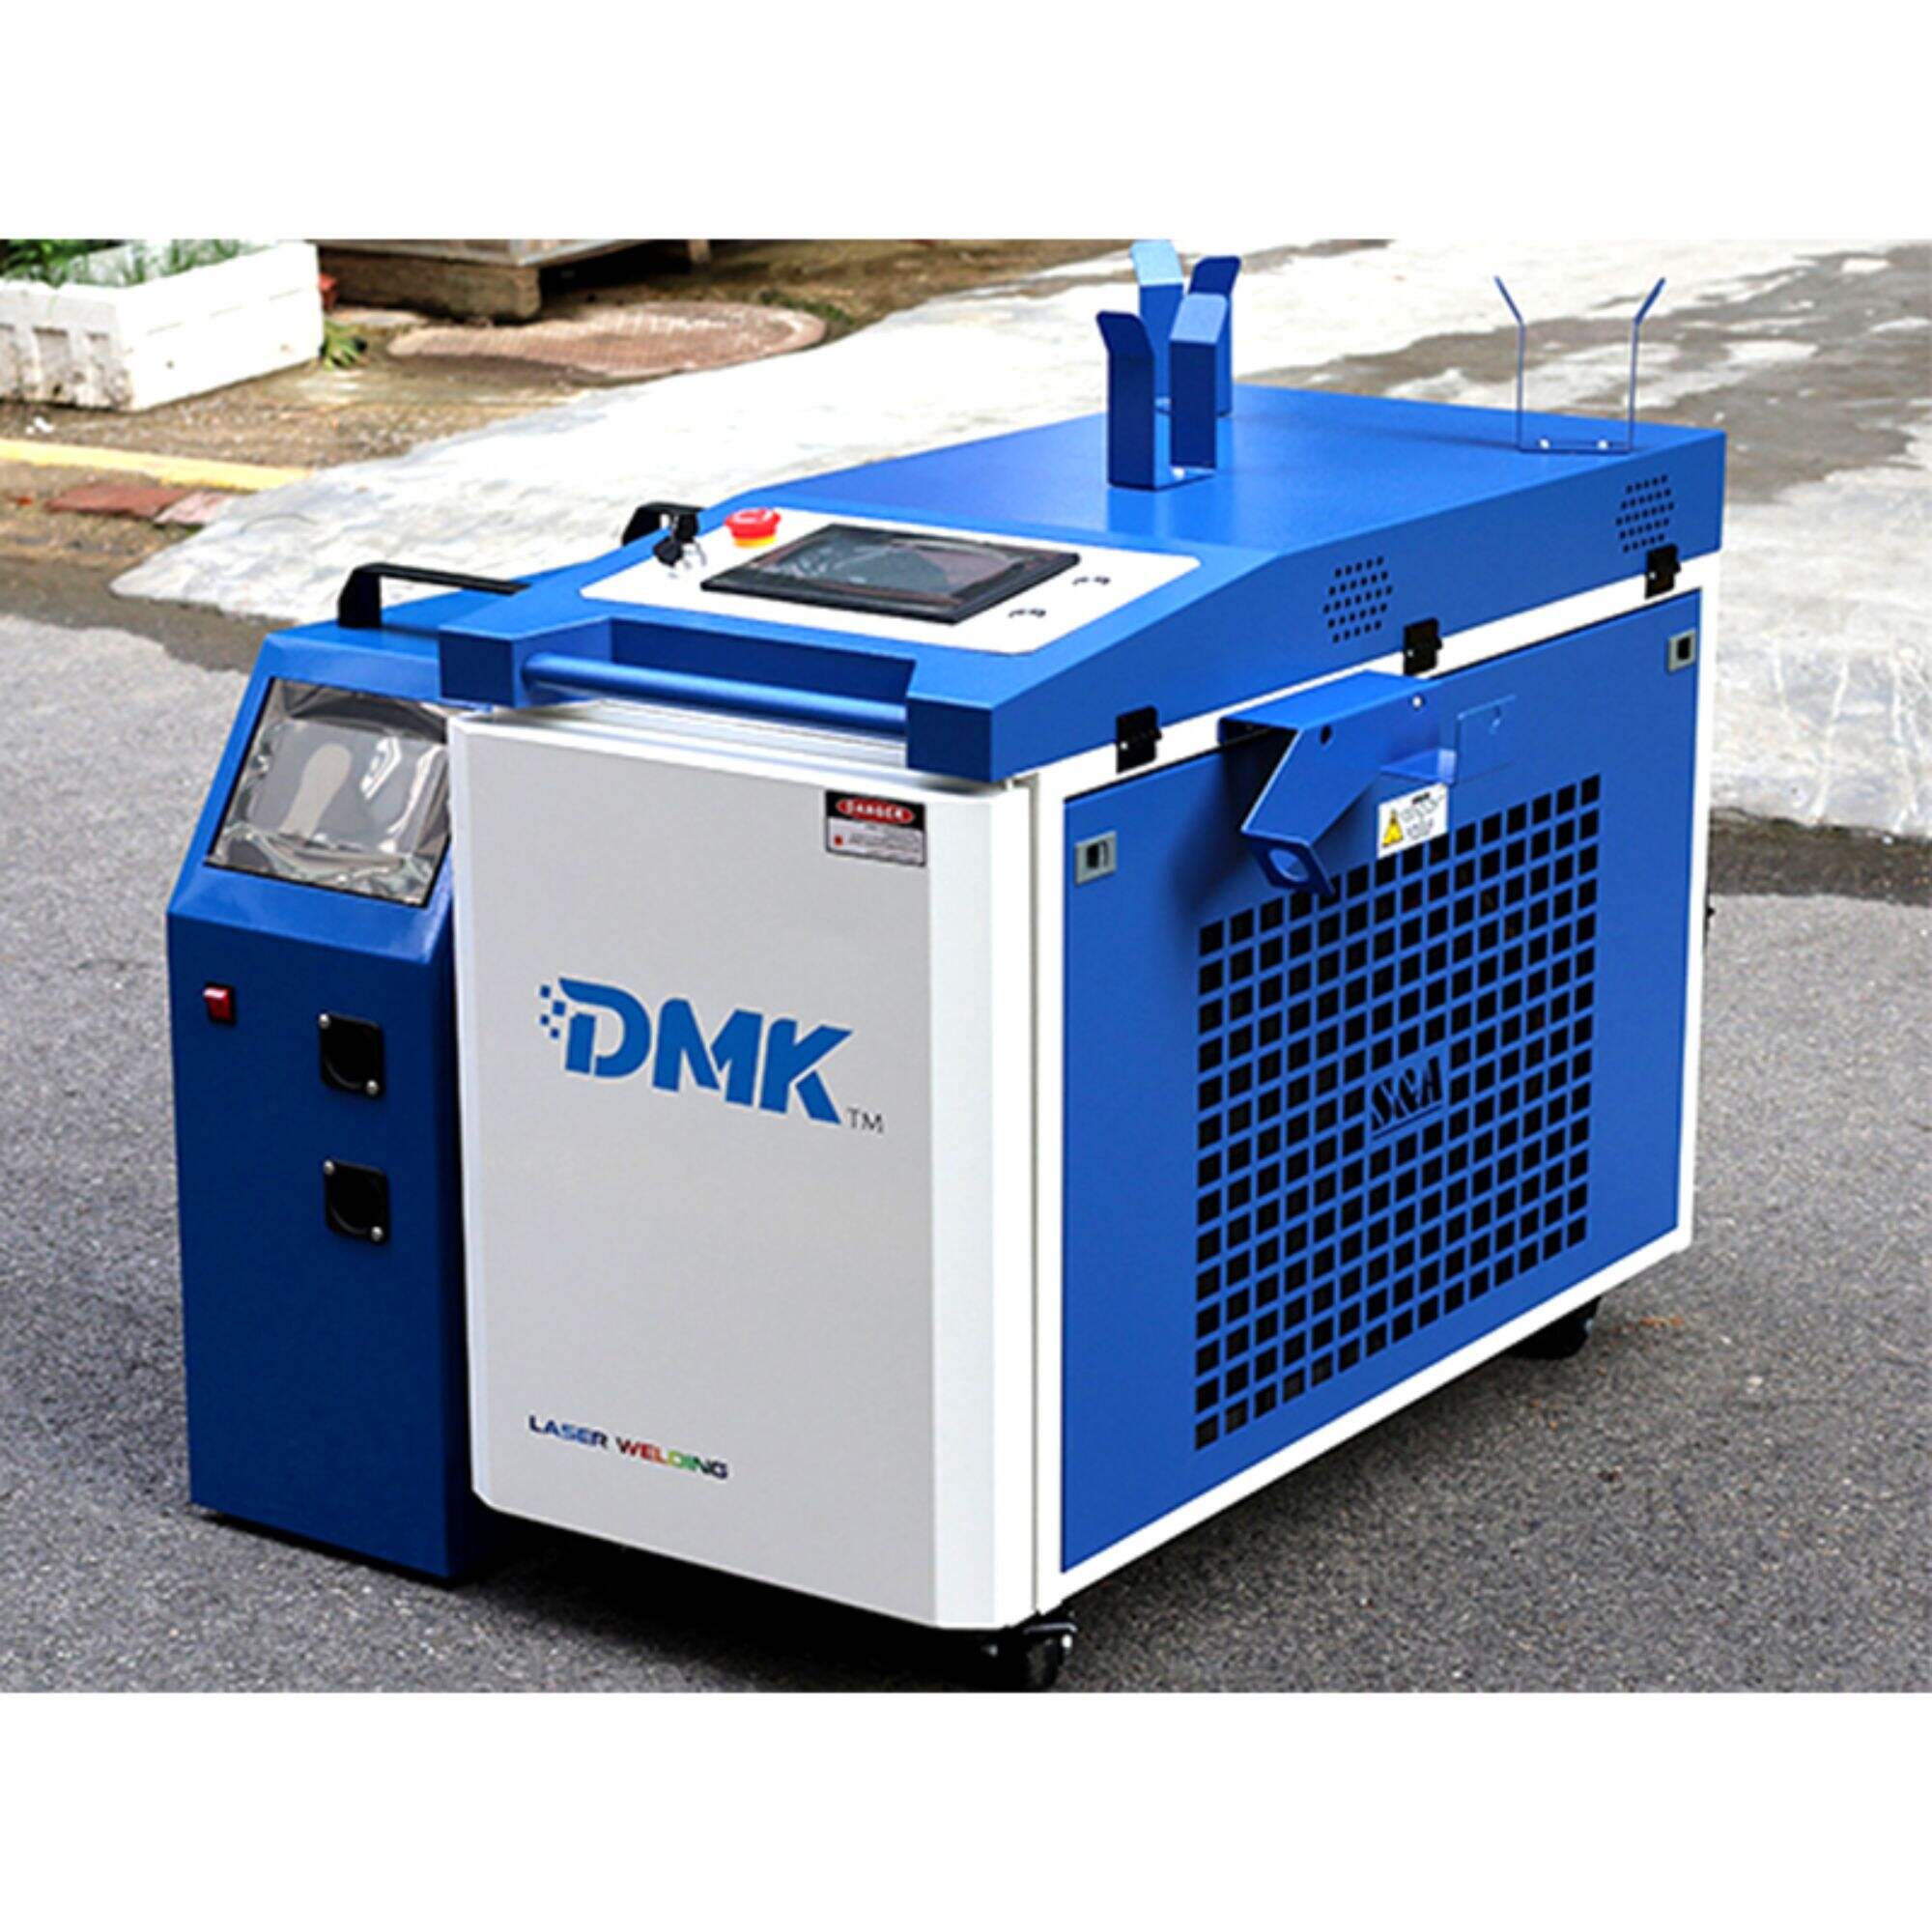 Zintegrowane ręczne spawarki laserowe DMK 1500W